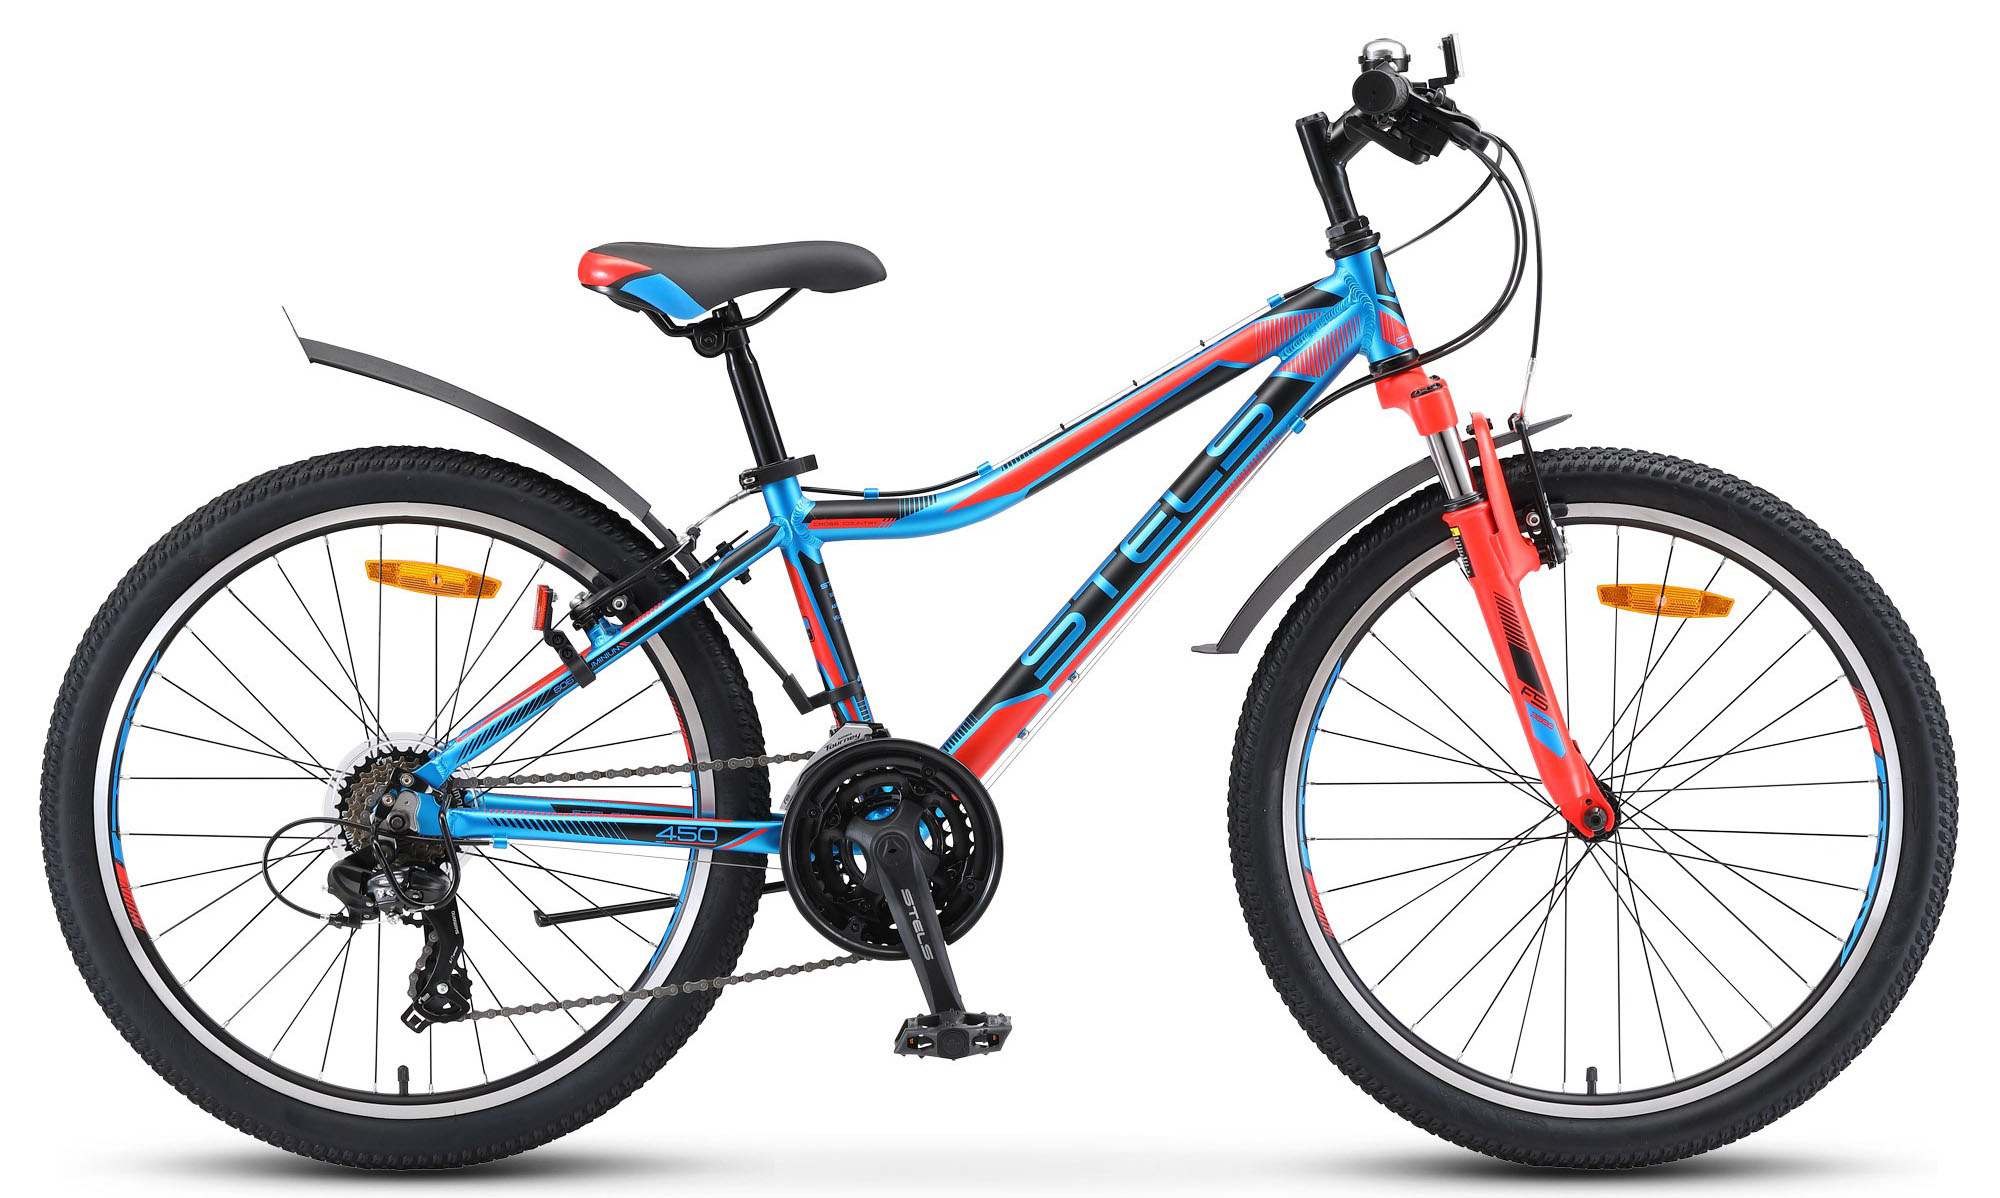  Отзывы о Детском велосипеде Stels Navigator 450 V 24 V010 2019